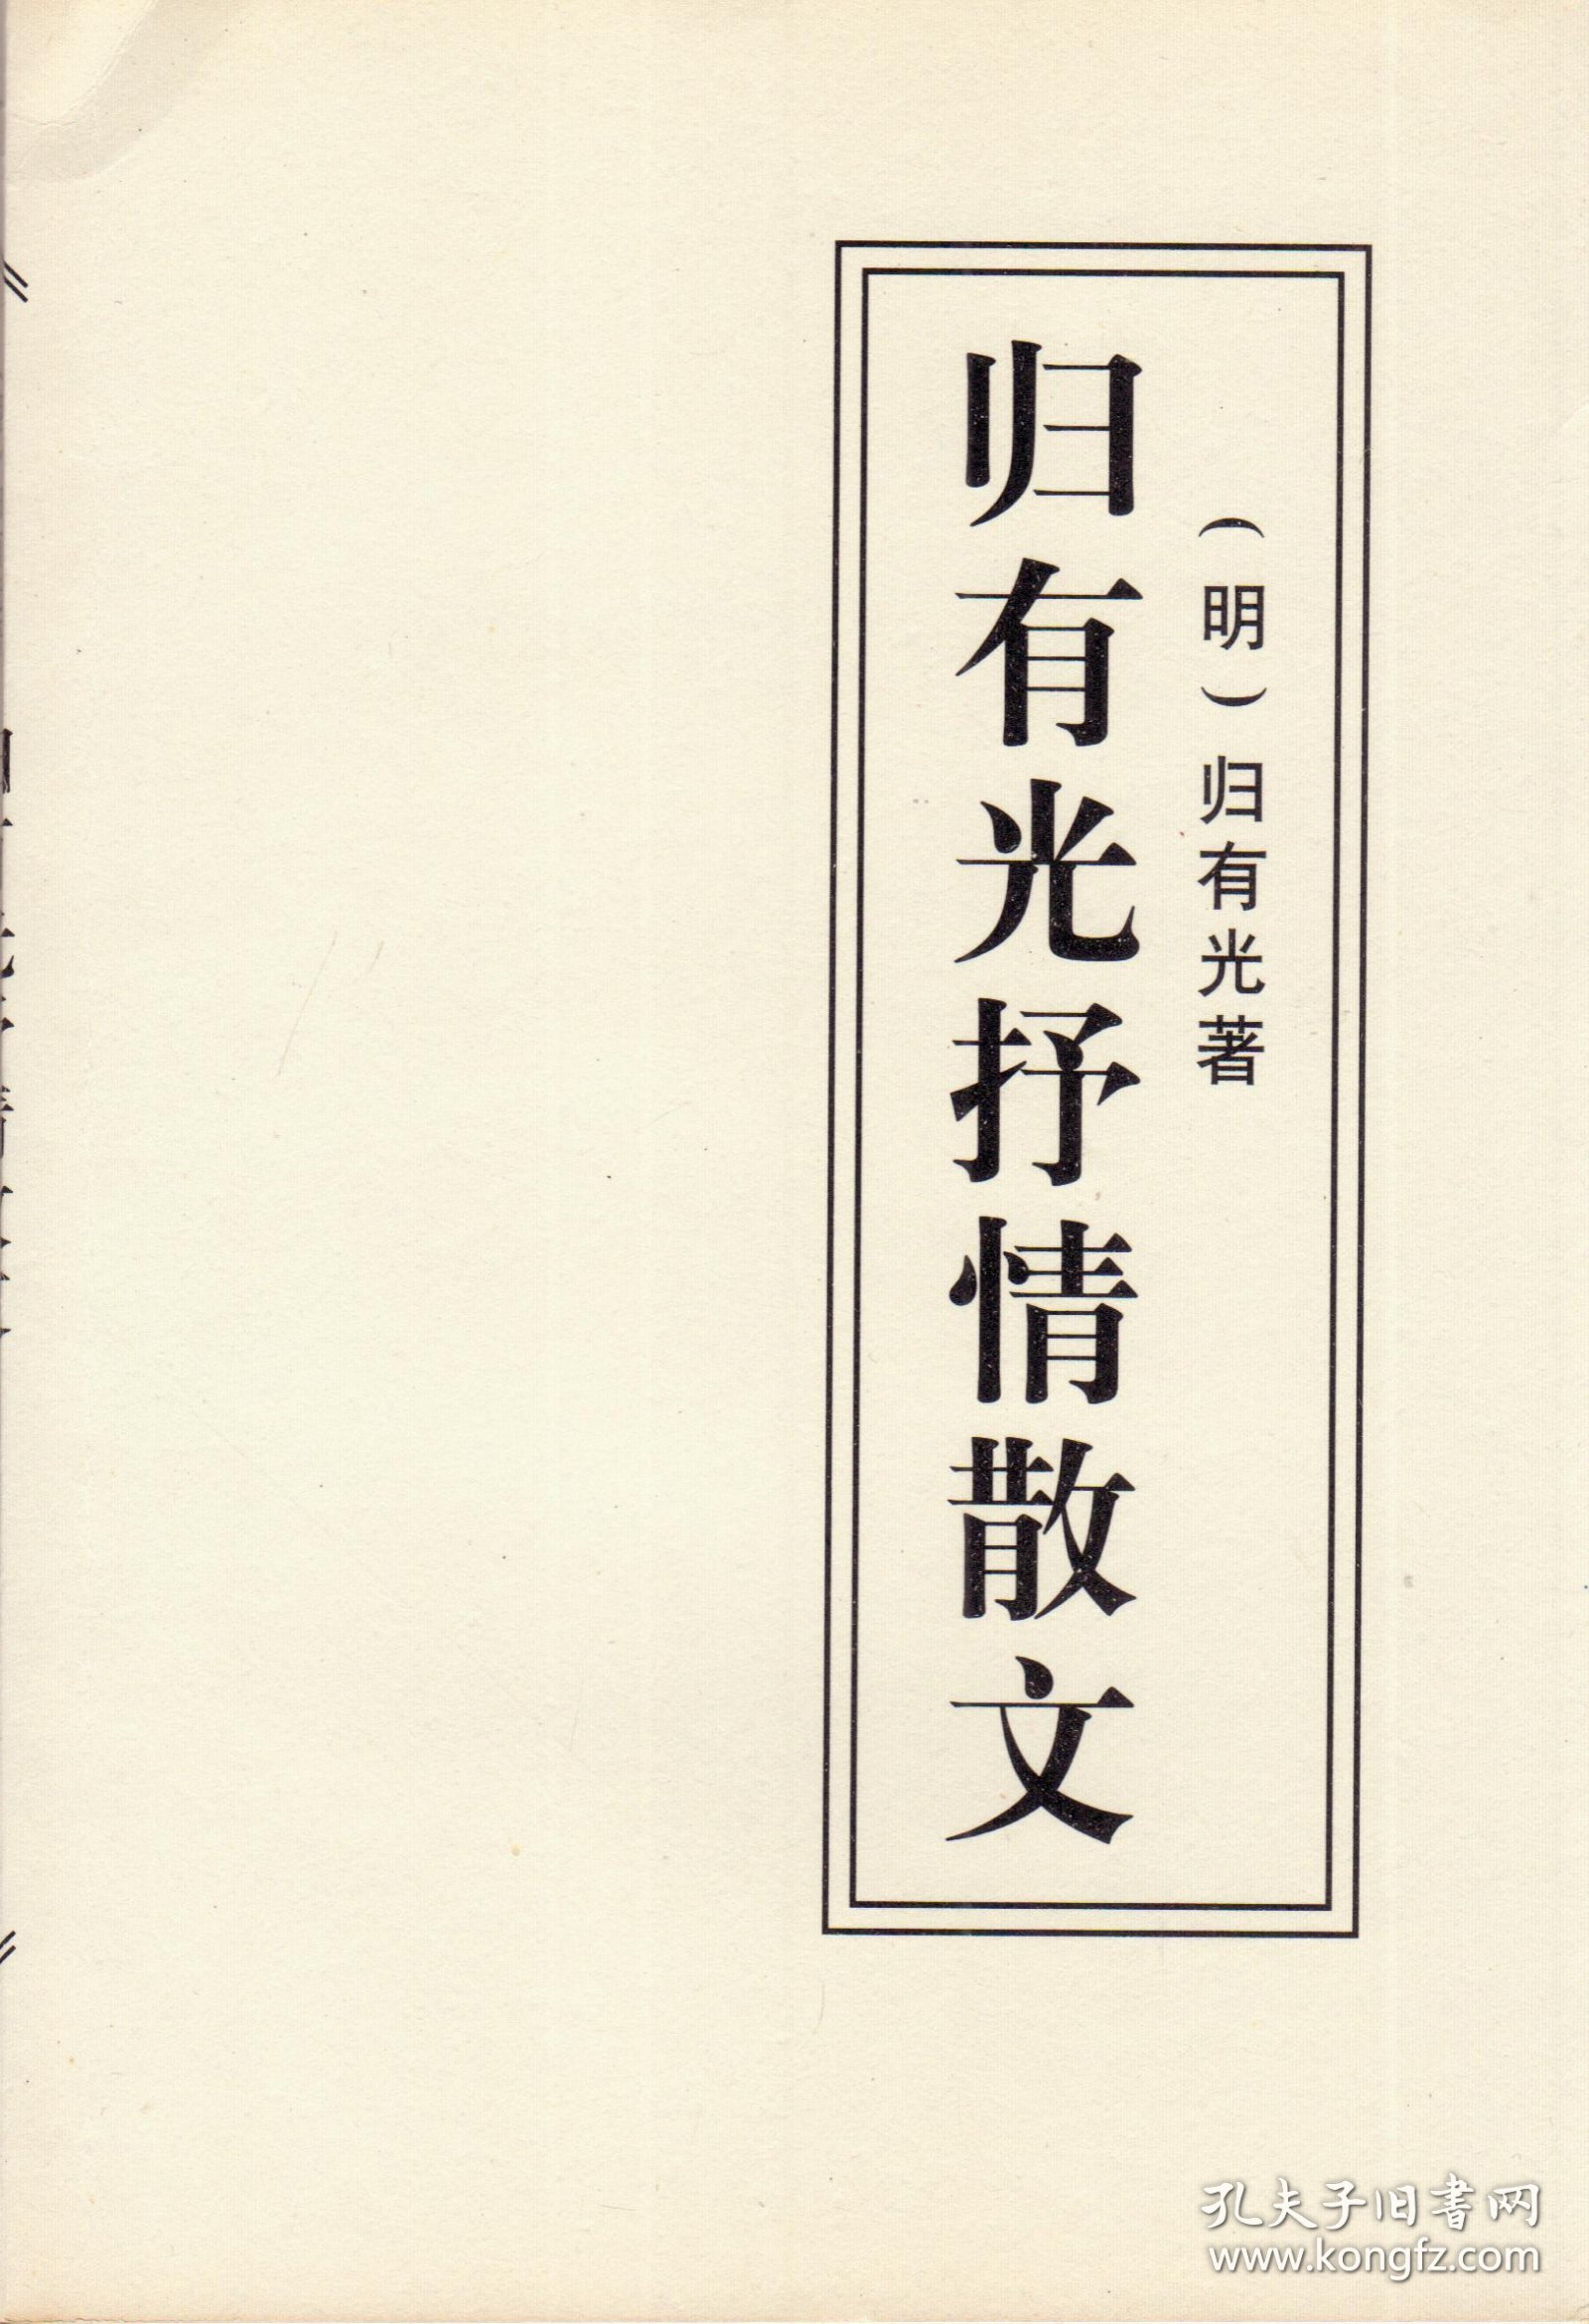 归有光抒情散文（明清性灵文学珍品，1998年11月北京一版一印，品相见图片）